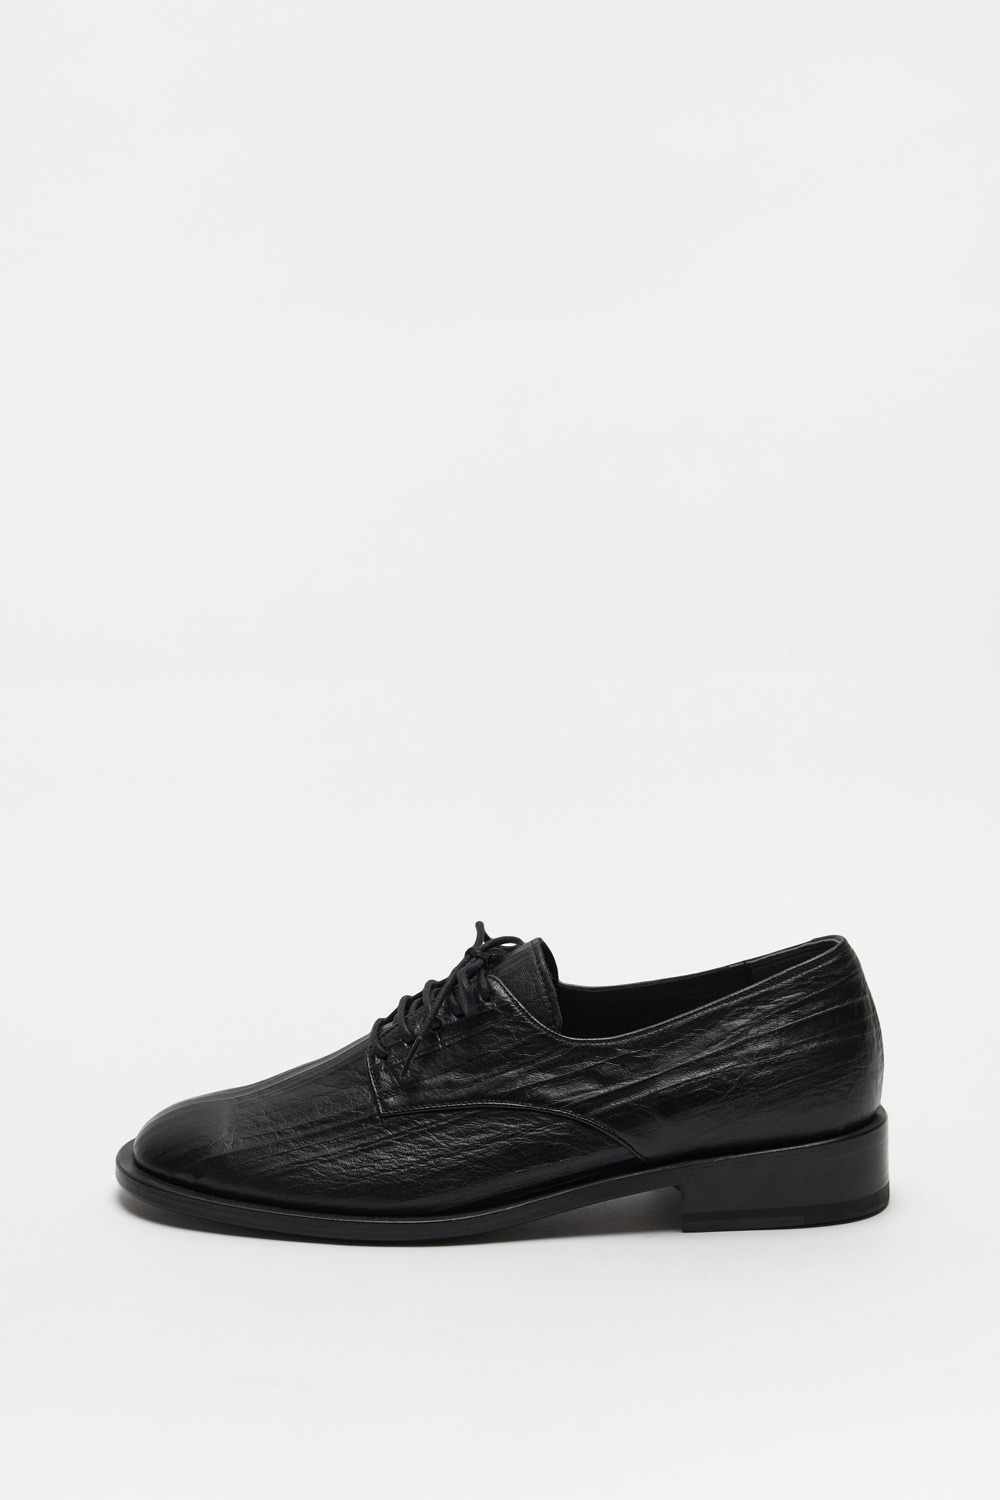 Derby Shoes (Men) - Black Creased